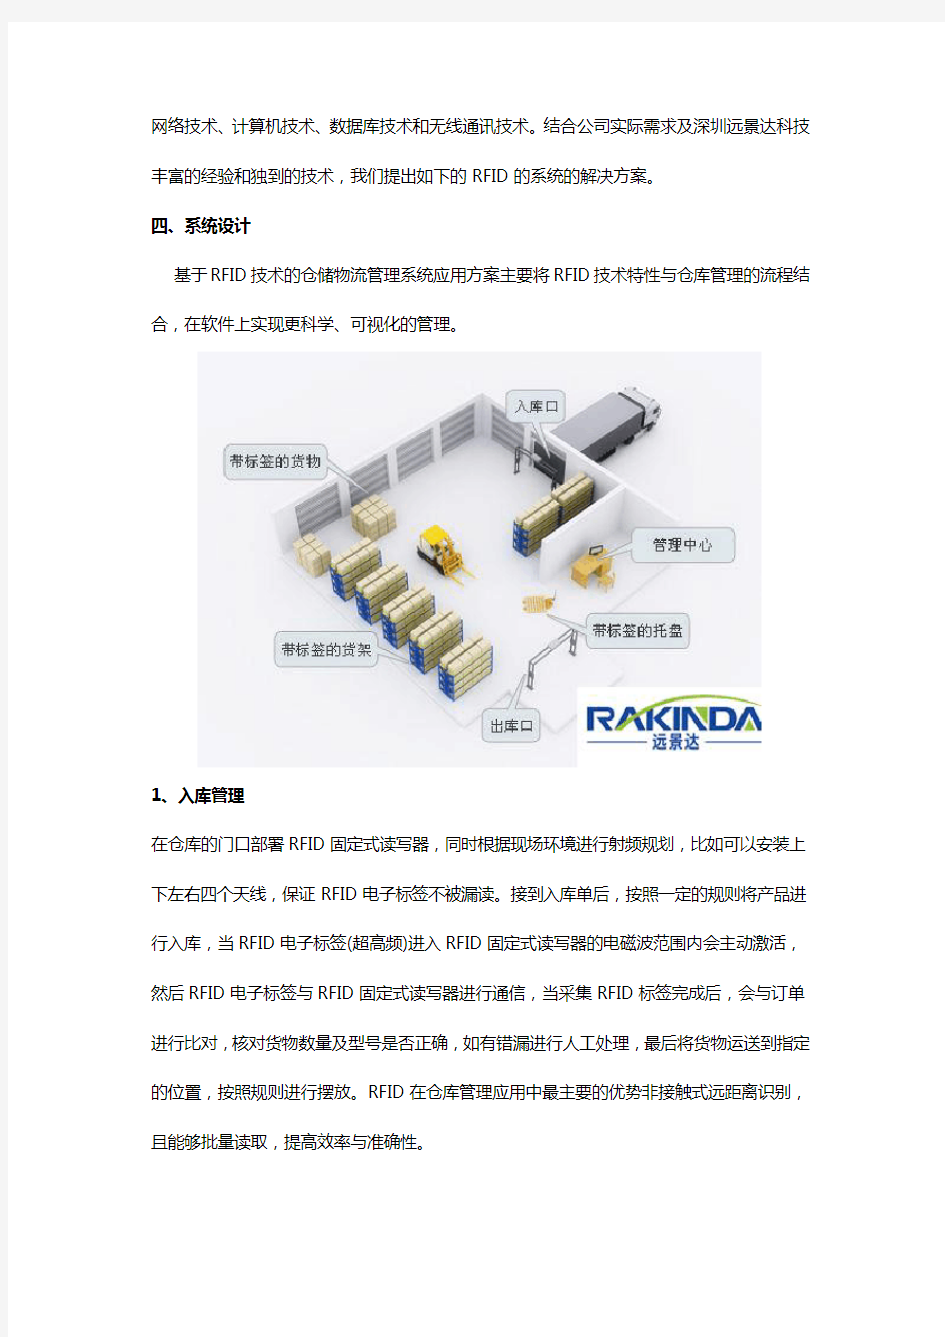 基于RFID技术的仓储物流管理系统应用方案